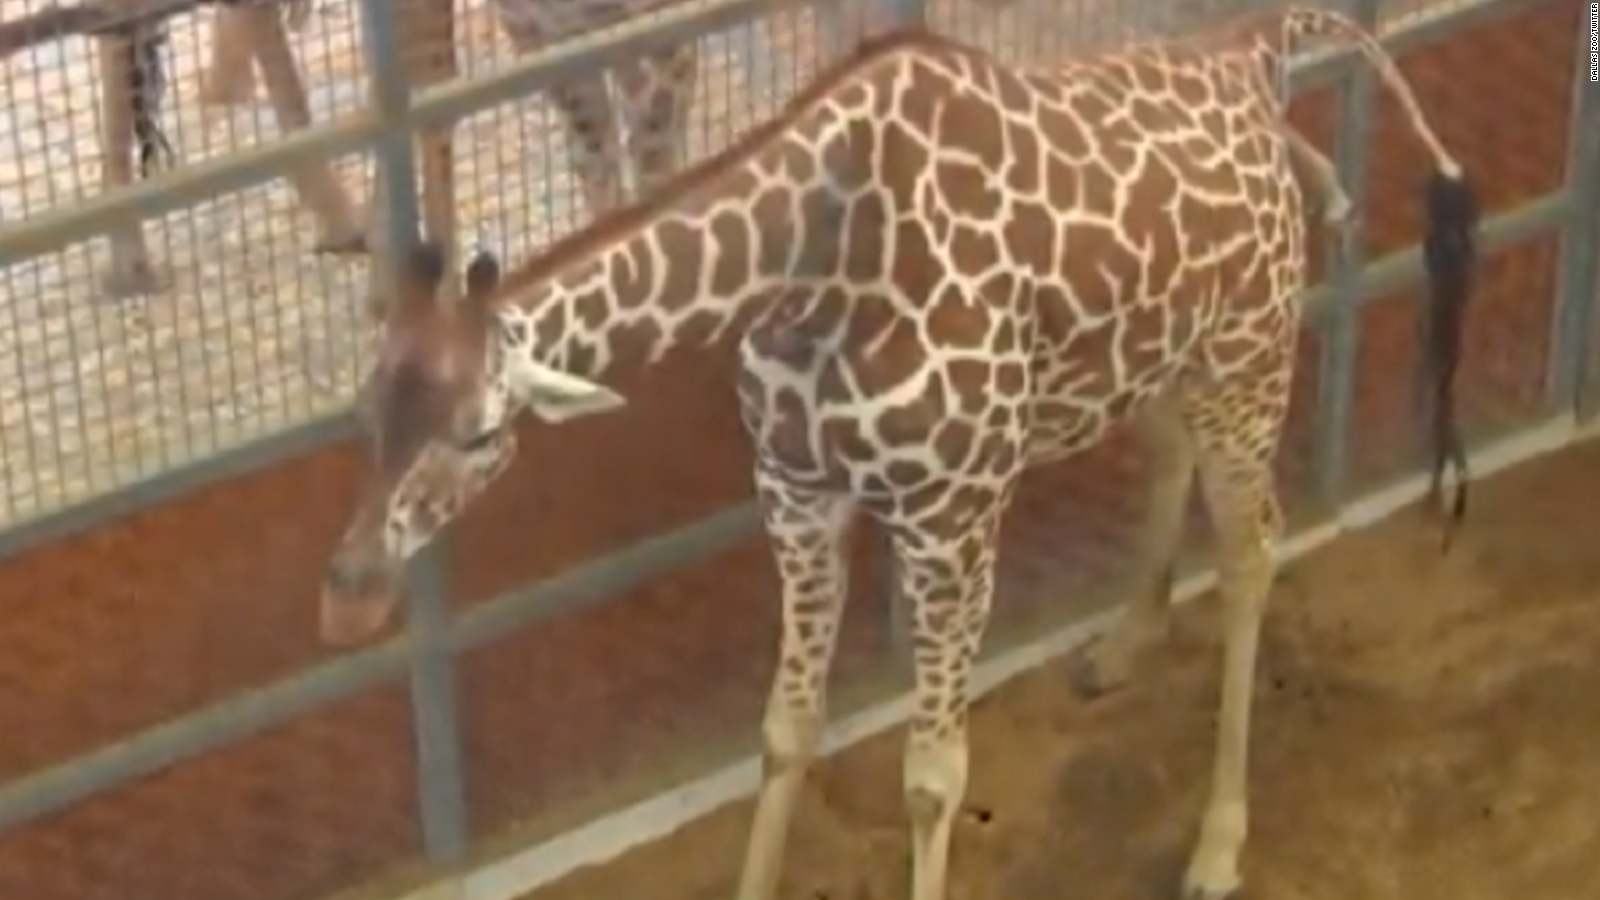 Internet-famous giraffe dies at Dallas Zoo - CNN